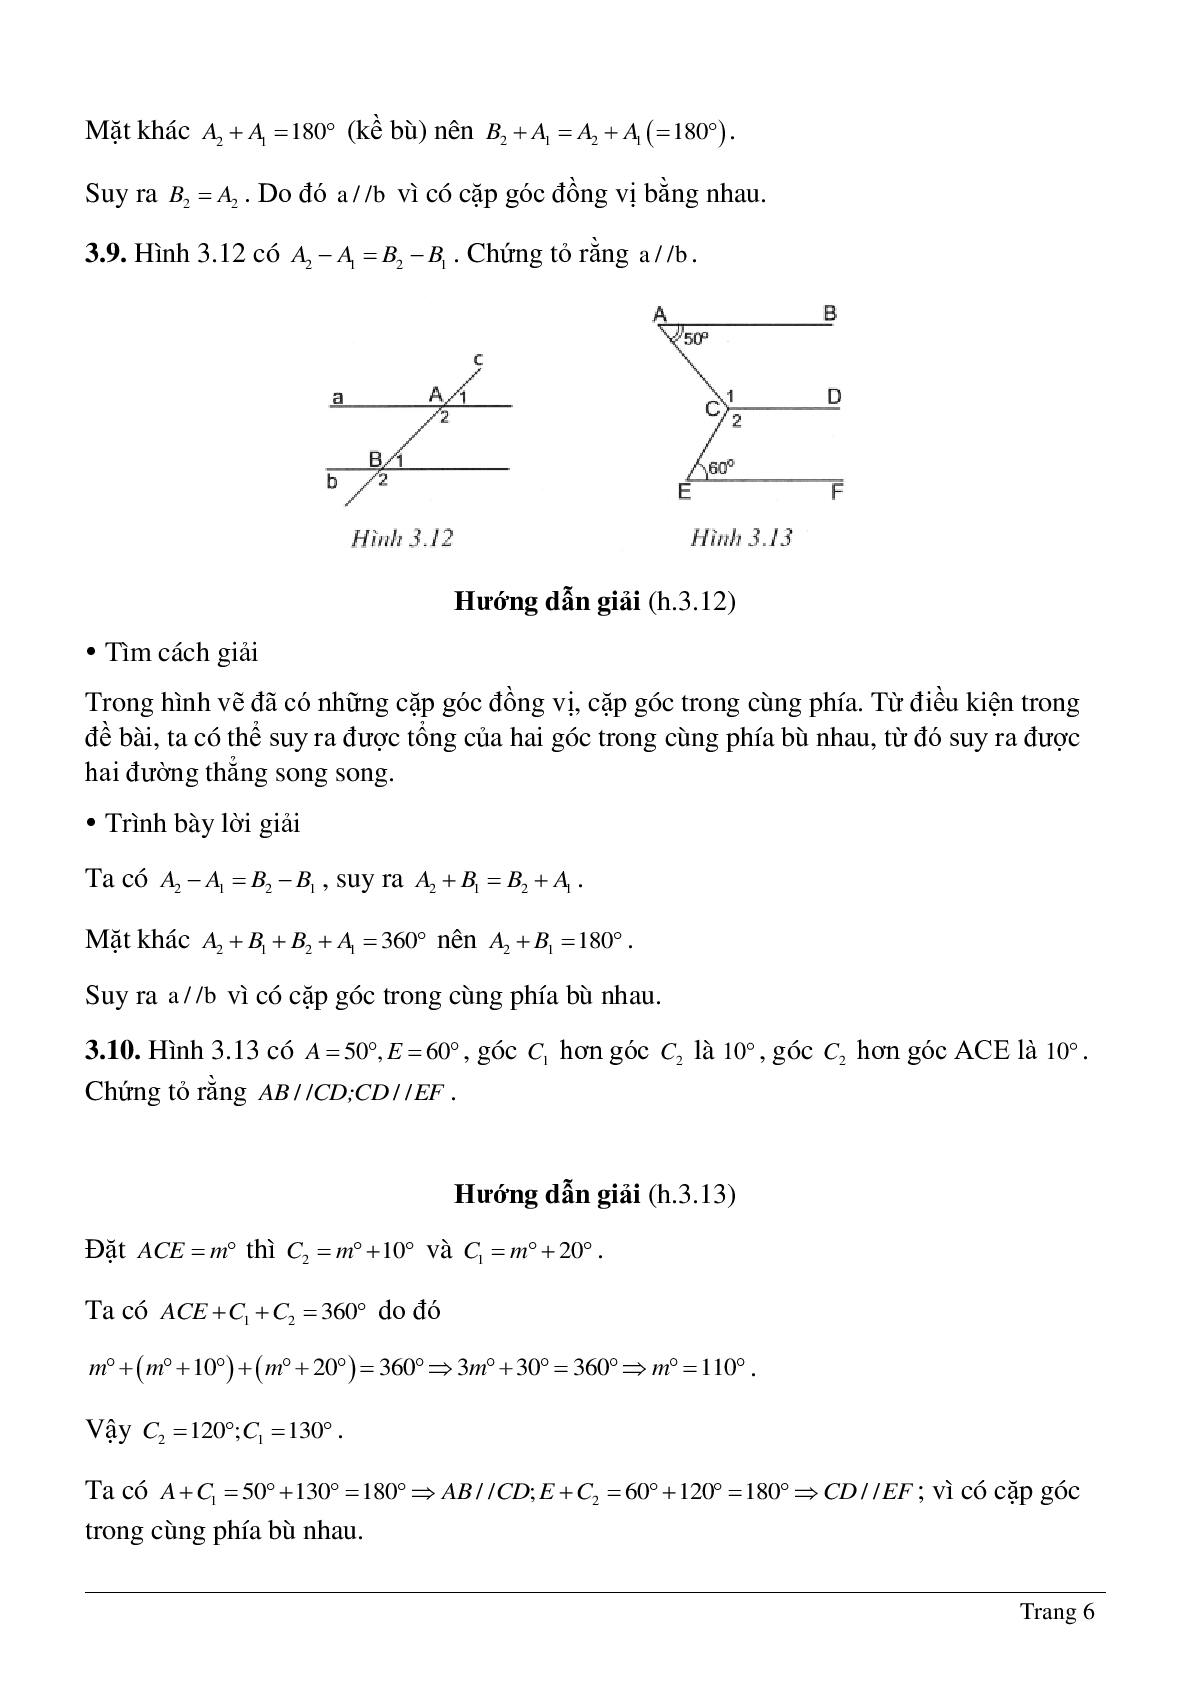 Phương pháp giải về Dấu hiệu hai đường thẳng song song hay nhất (trang 6)